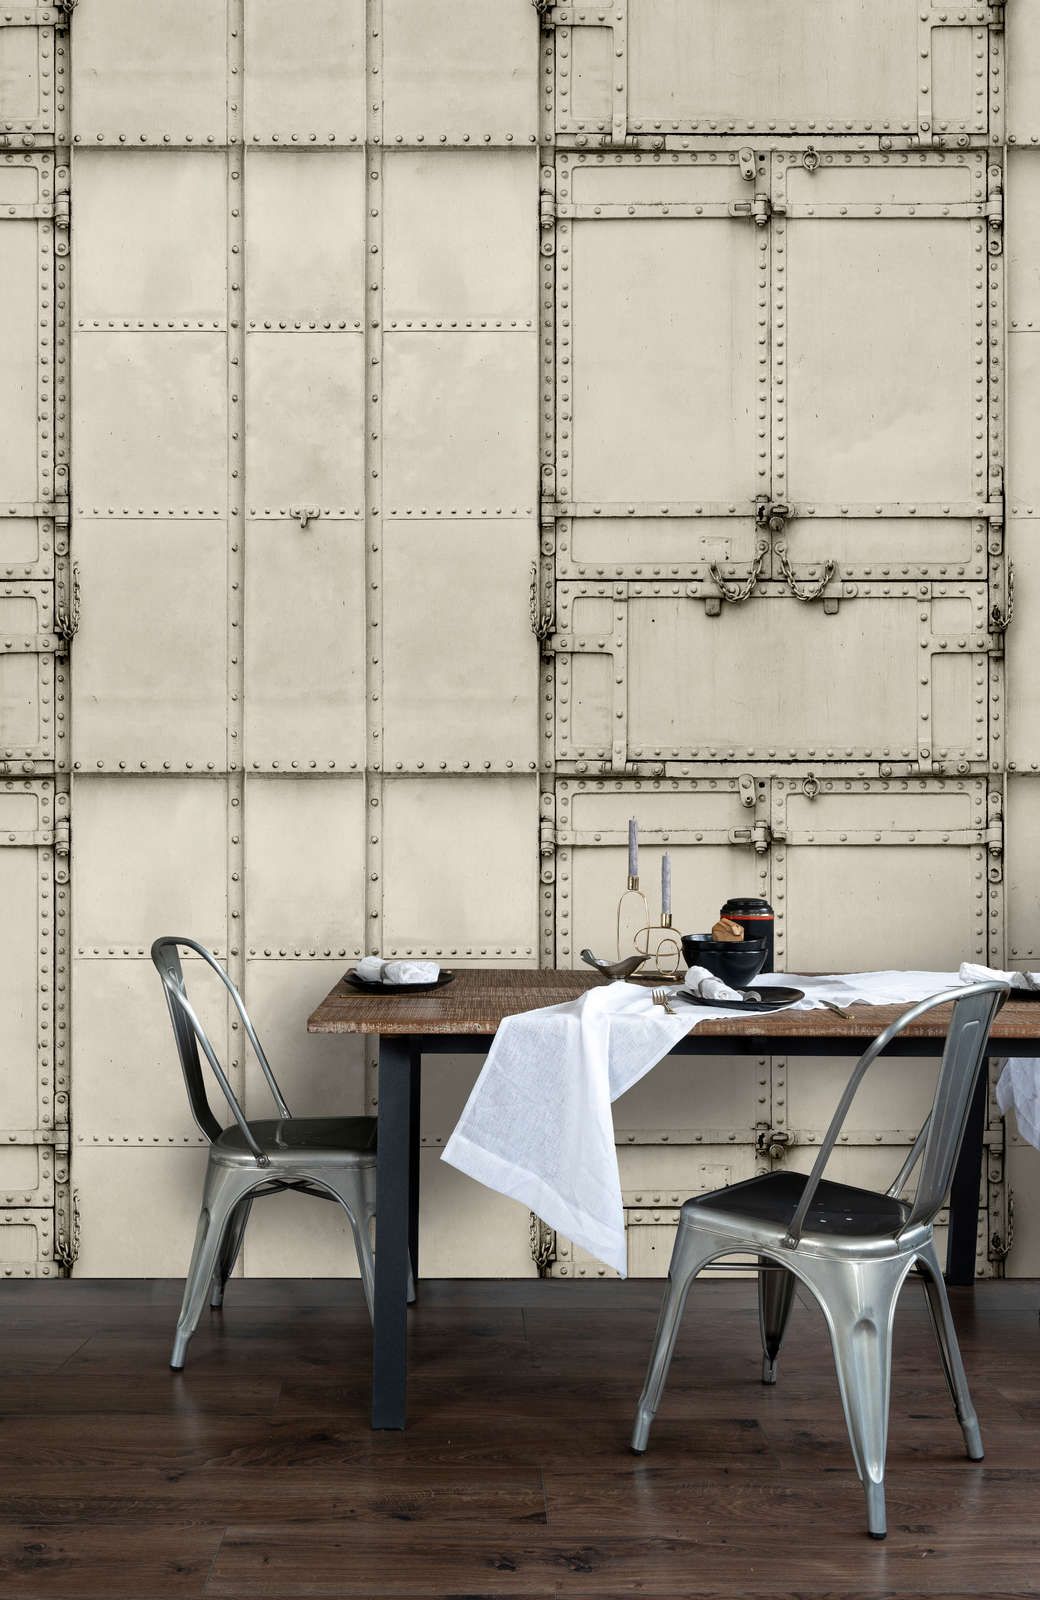             papier peint en papier panoramique »madurai« - design patchwork avec plaques métalliques avec rivets & chaînes - intissé mat et lisse
        